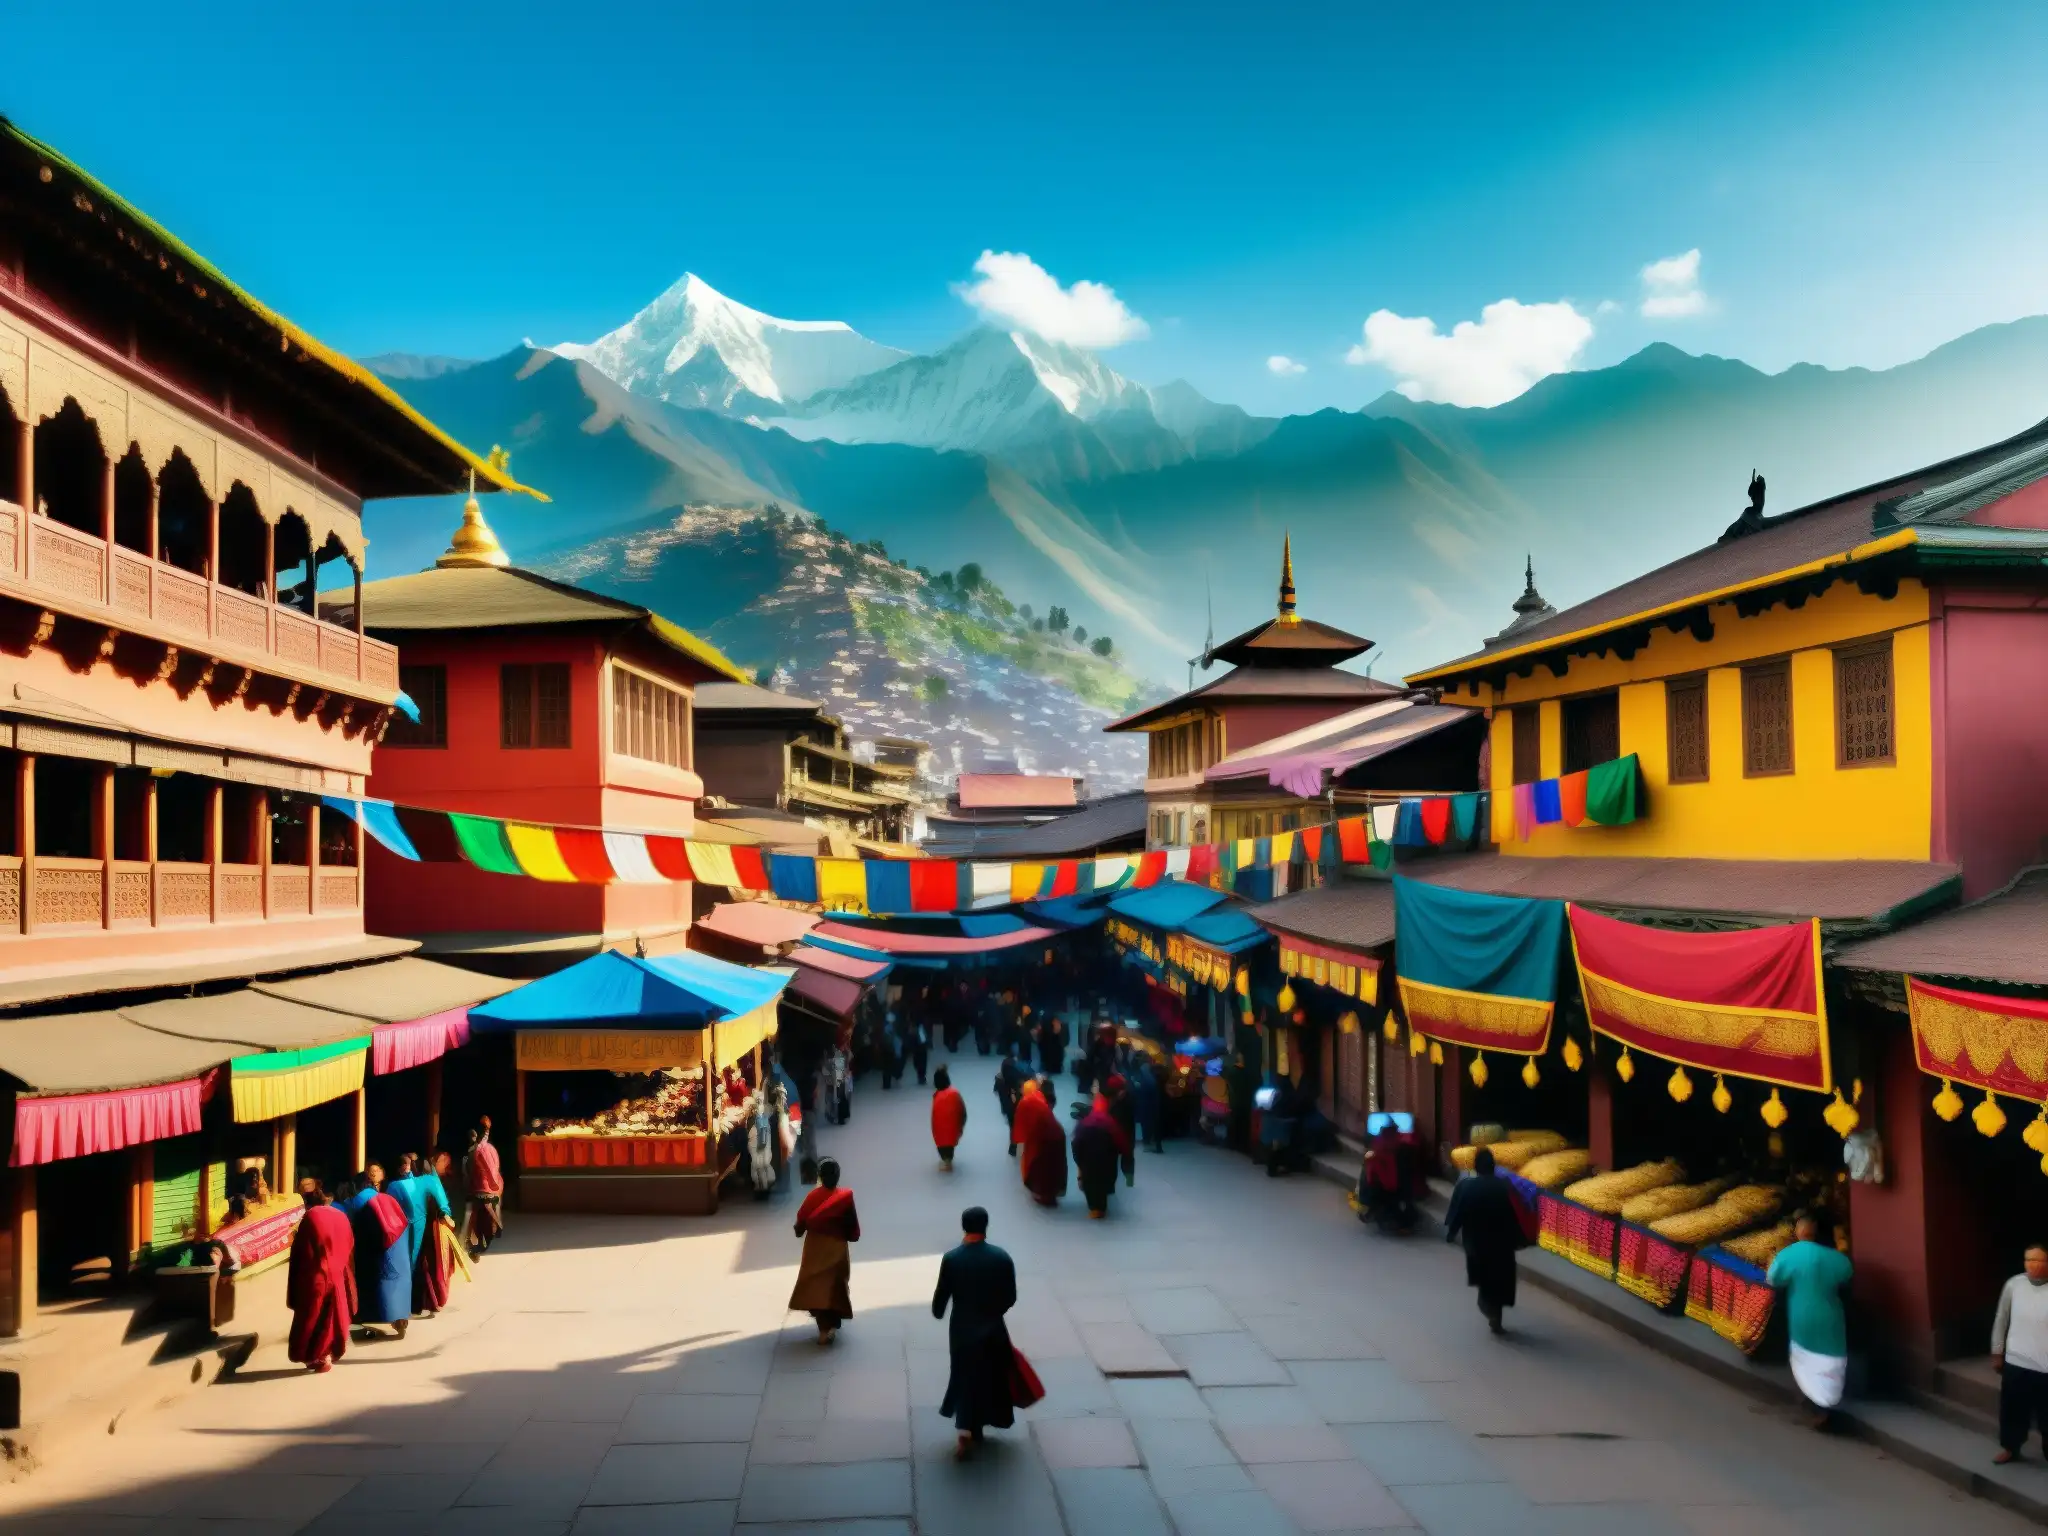 Vibrante escena de las calles de Kathmandu, Nepal, con mercados bulliciosos, arquitectura tradicional y gente vestida con trajes típicos